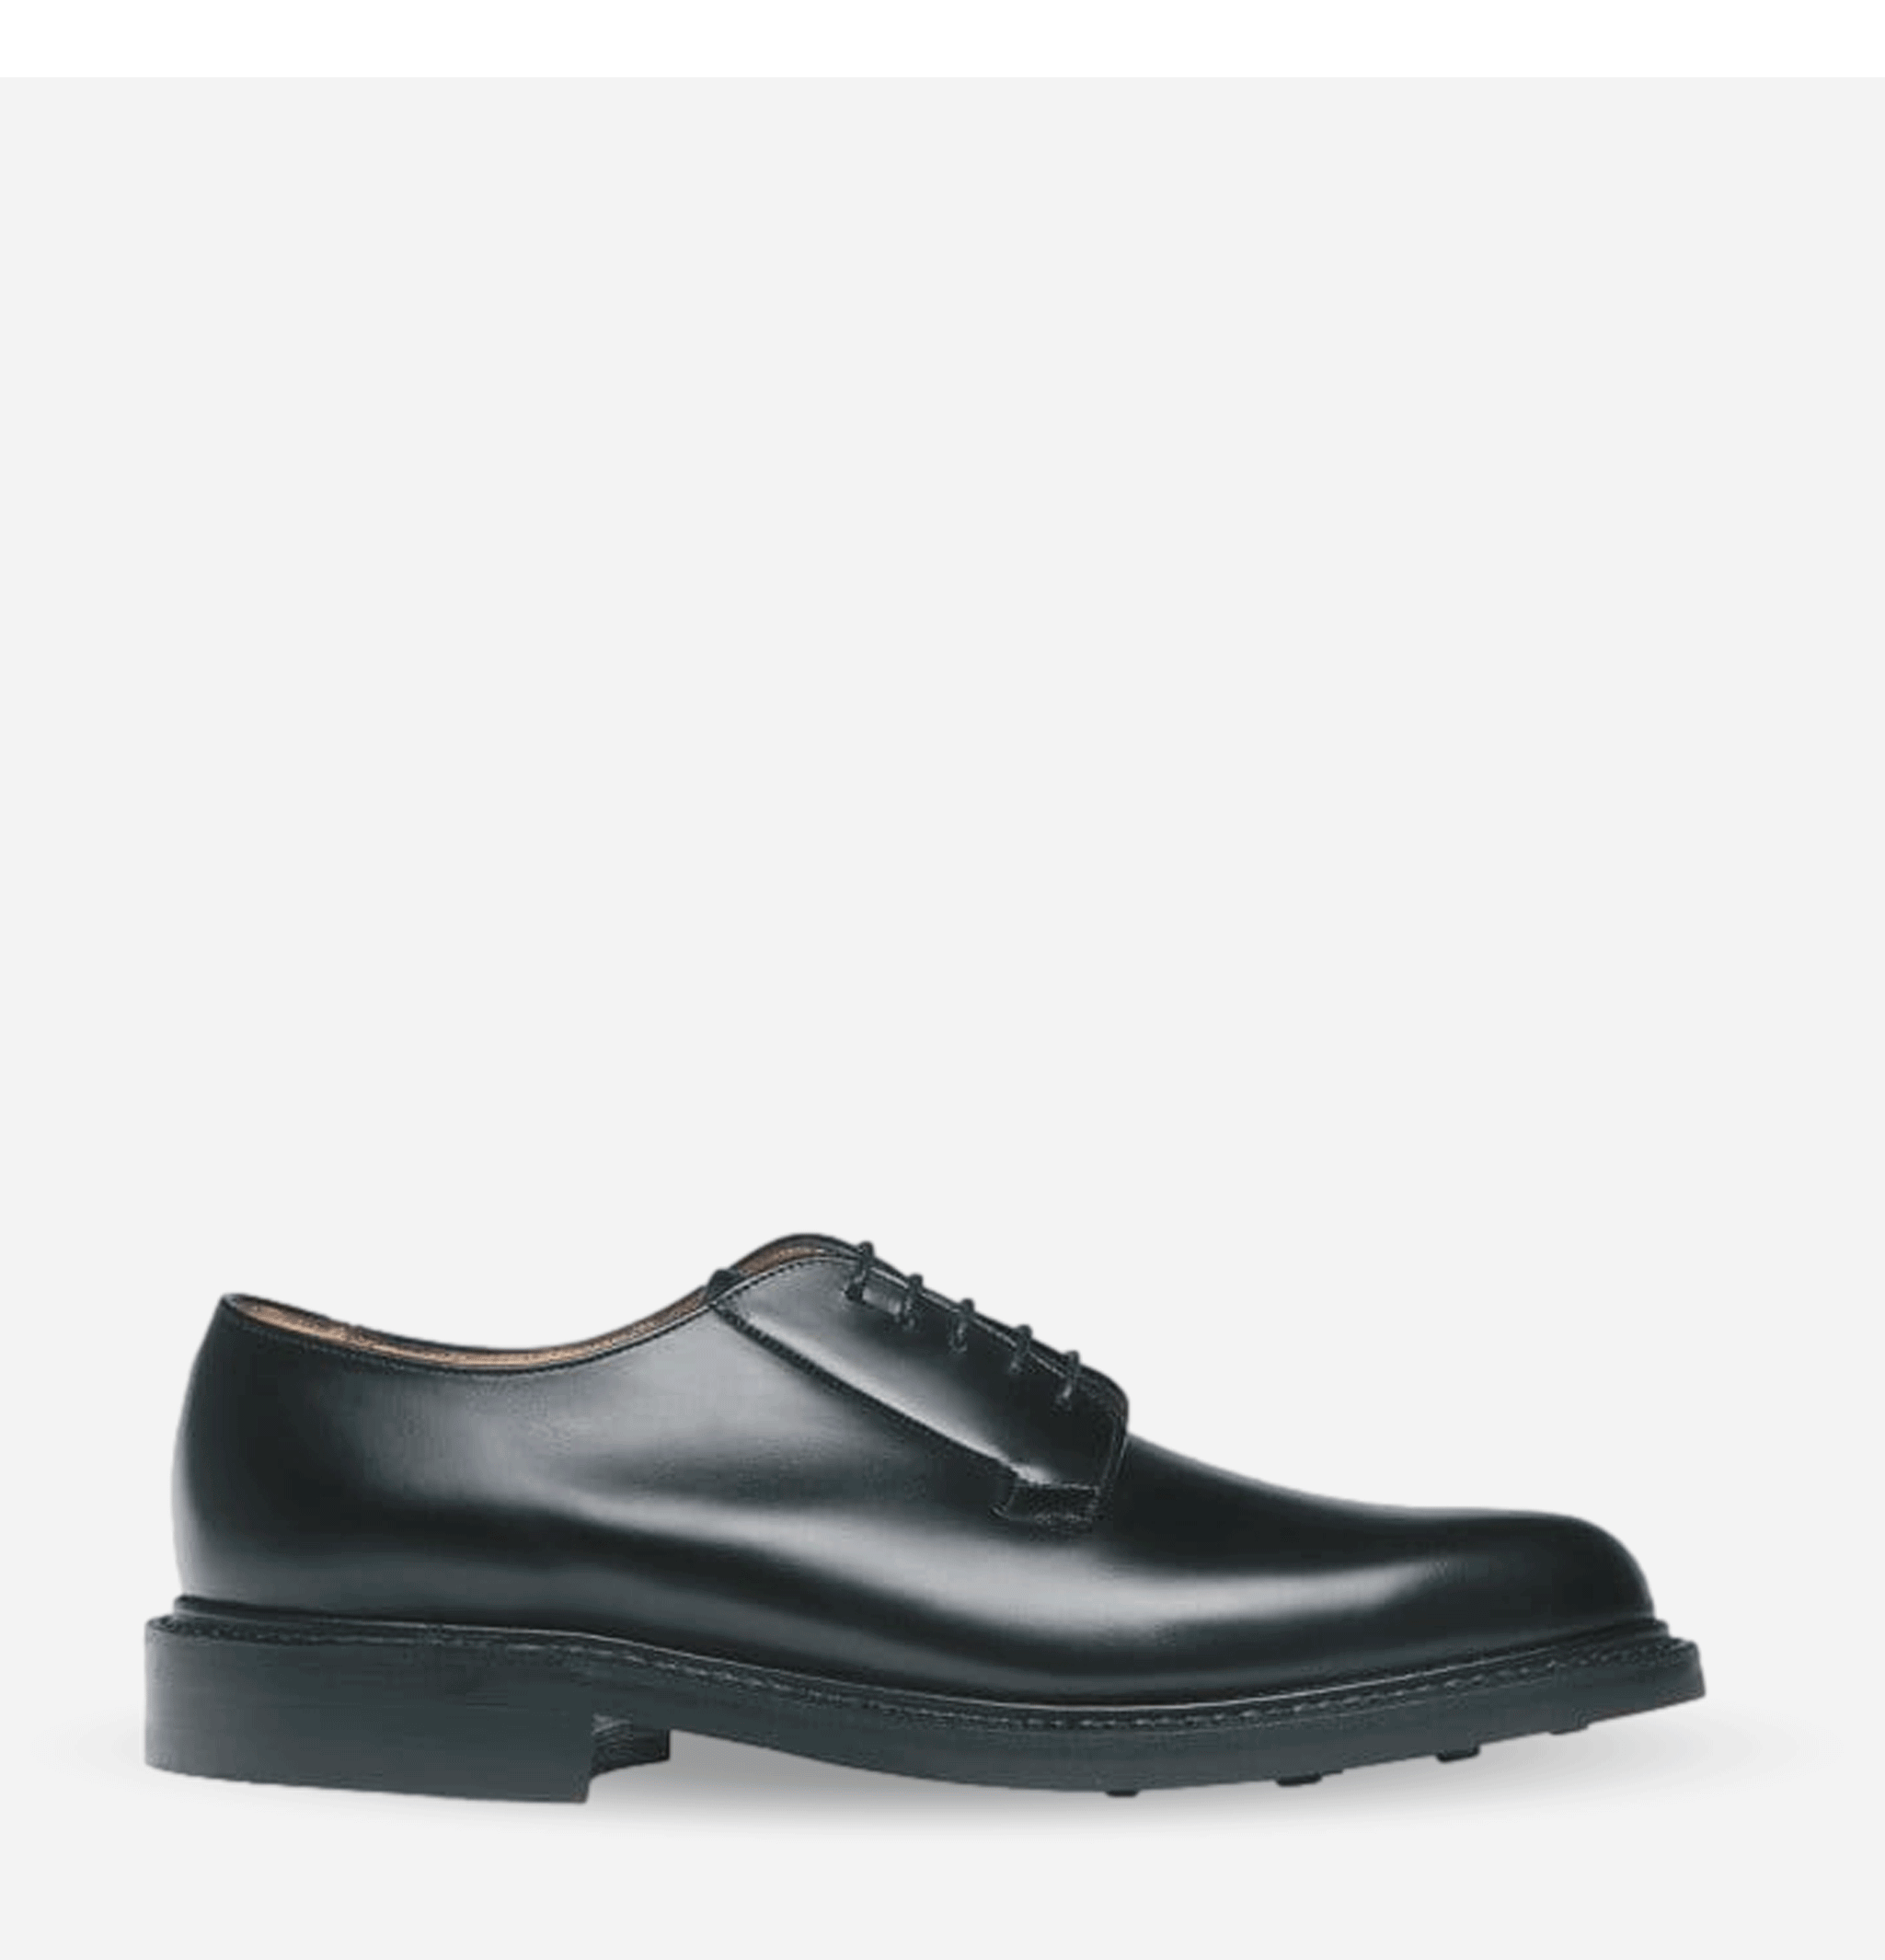 Chaussures DeaI Black